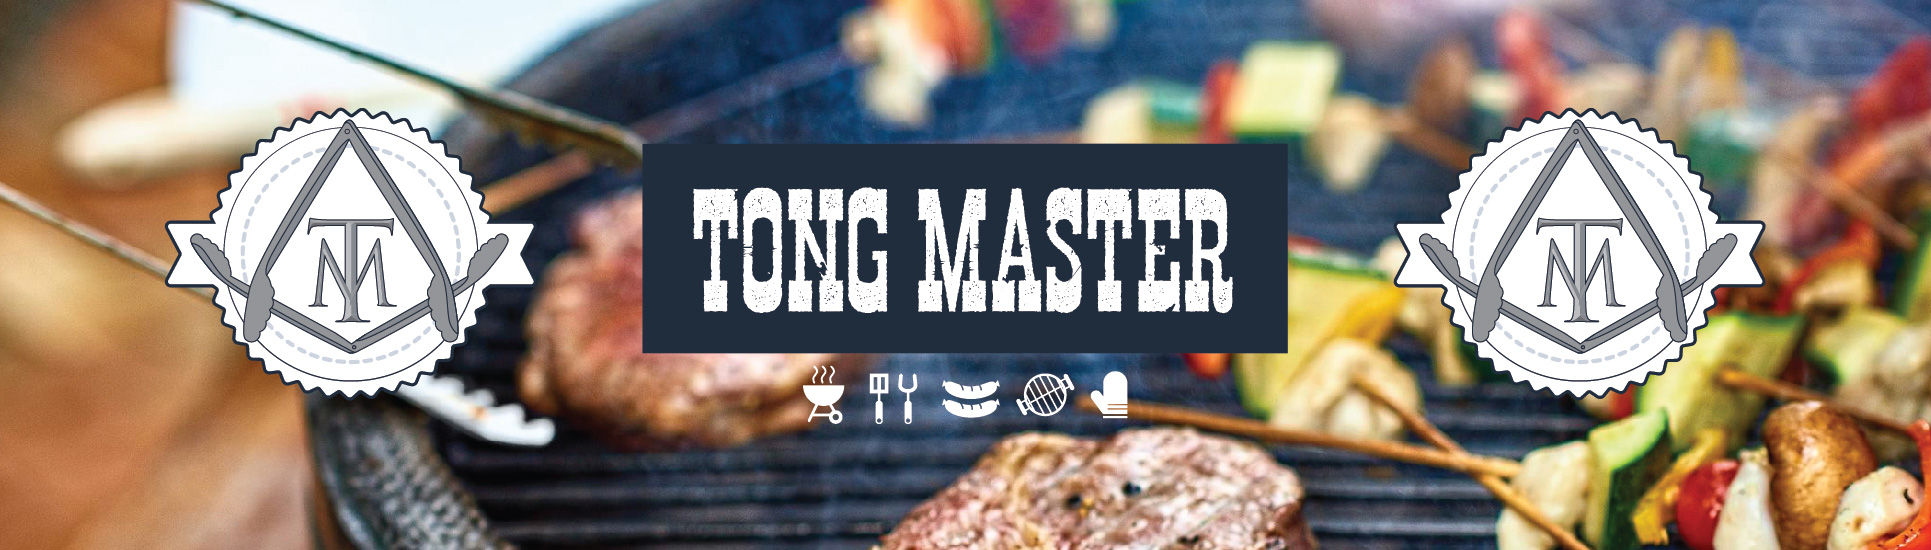 Tong Master